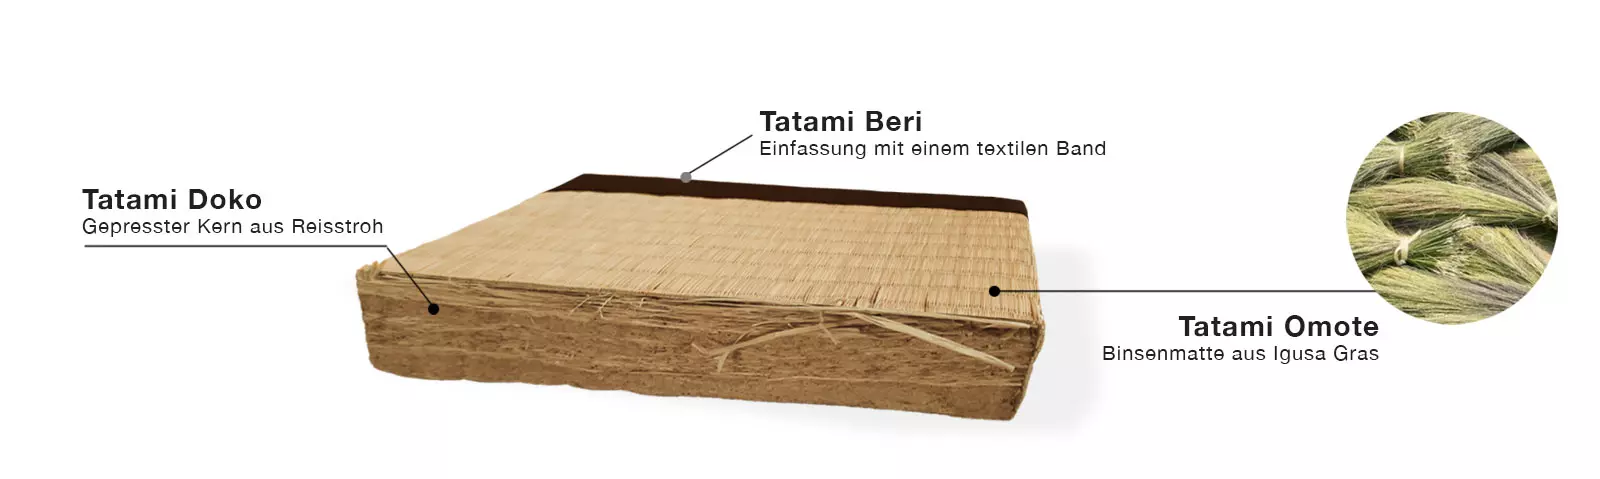 Aufbau und Inhalt einer Tatami Matte